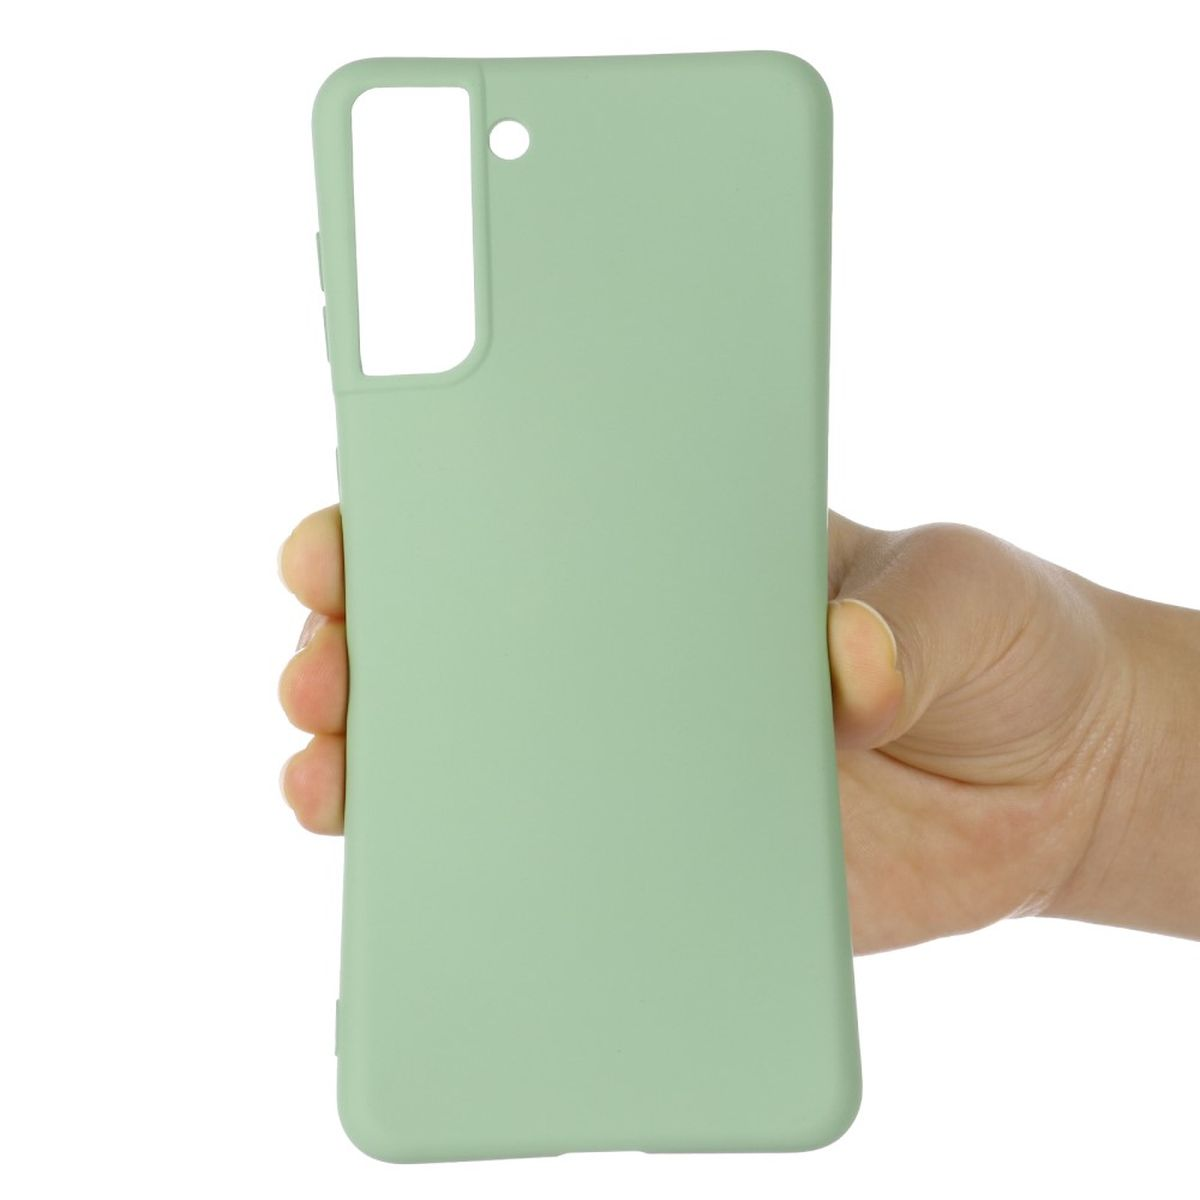 Handycase Galaxy 5G, Grün S22 COVERKINGZ Samsung, Silikon, aus Backcover,